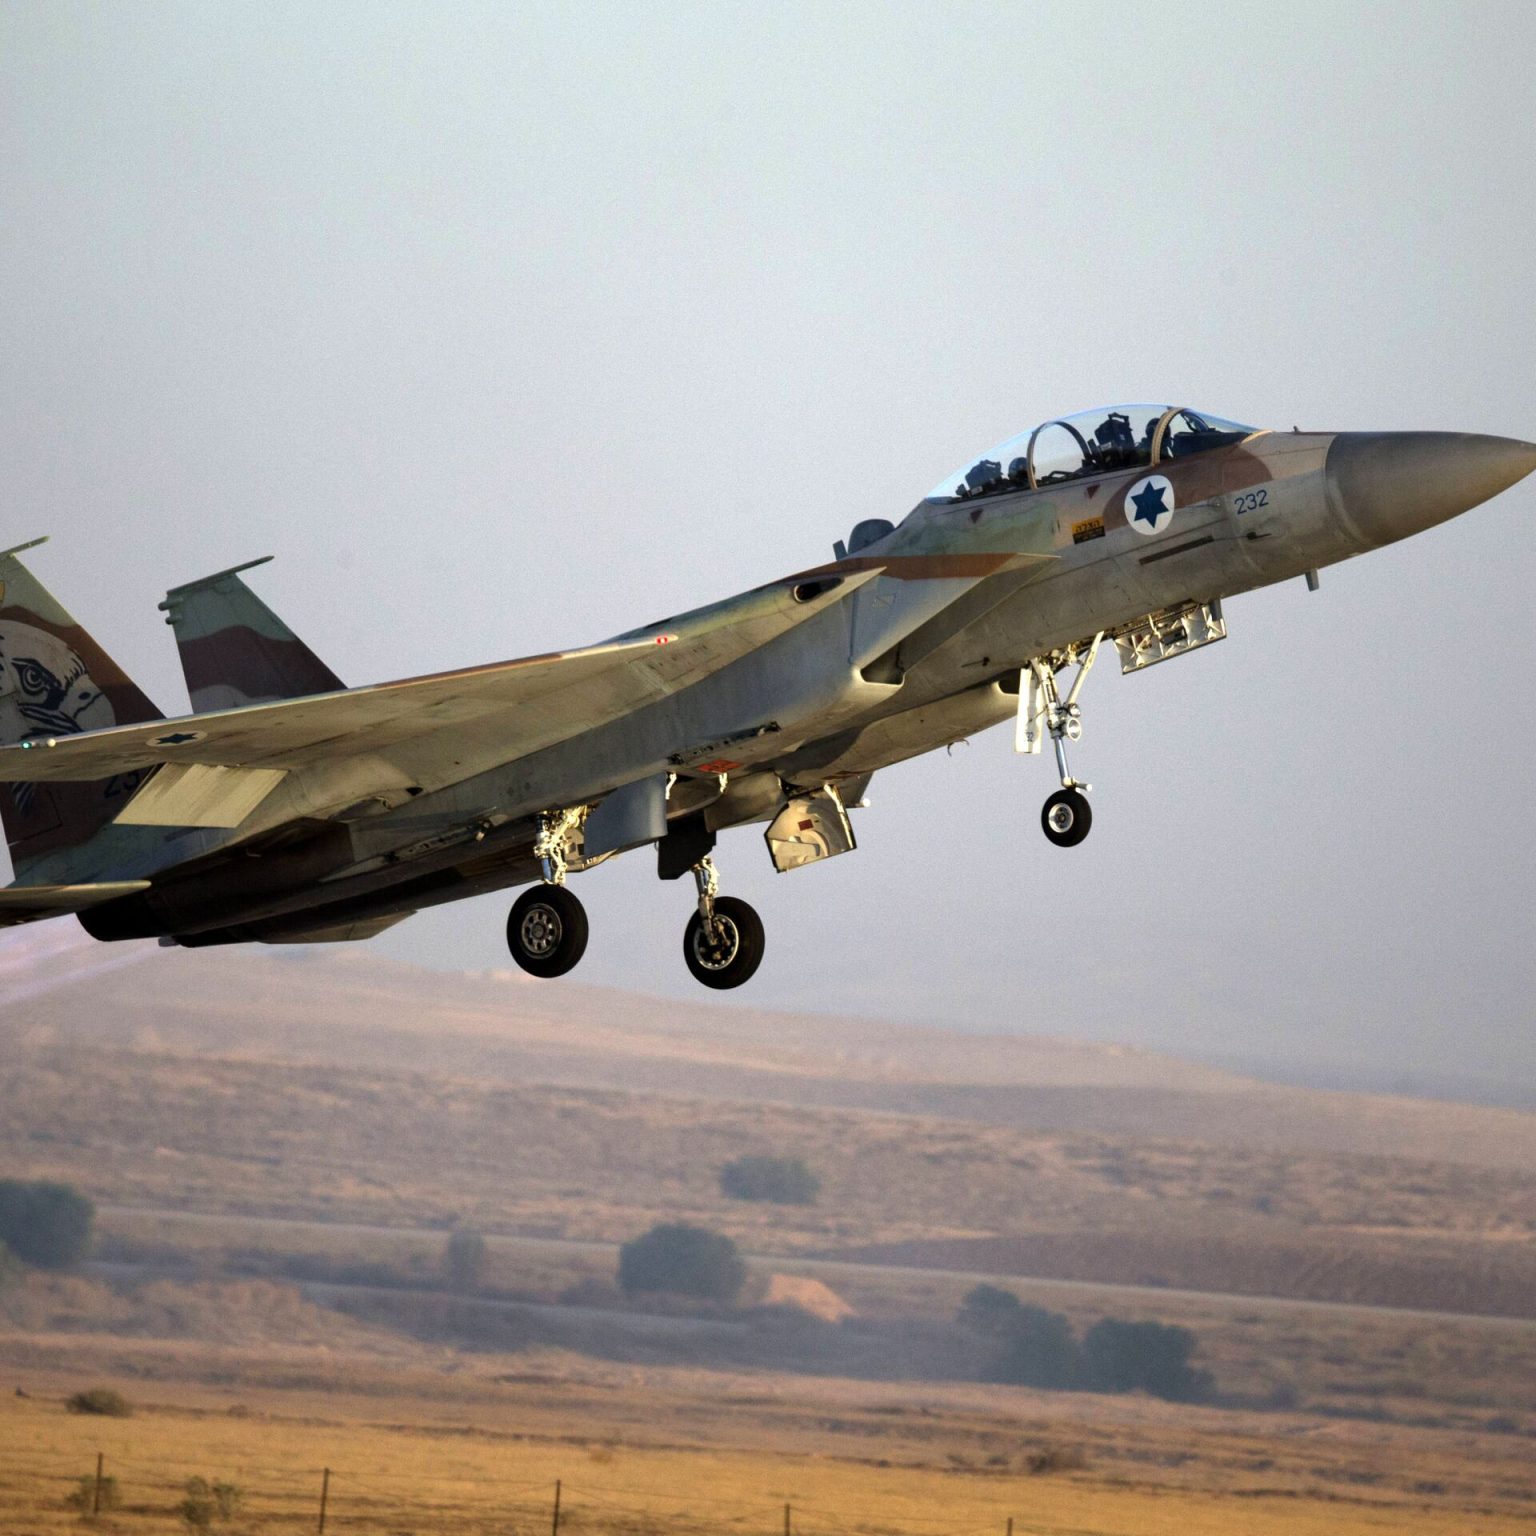 مسؤولون غربيون وإيرانيون: سلاح إسرائيلي ألحق أضرارا بنظام للدفاع الجوي قرب نطنز بإيران